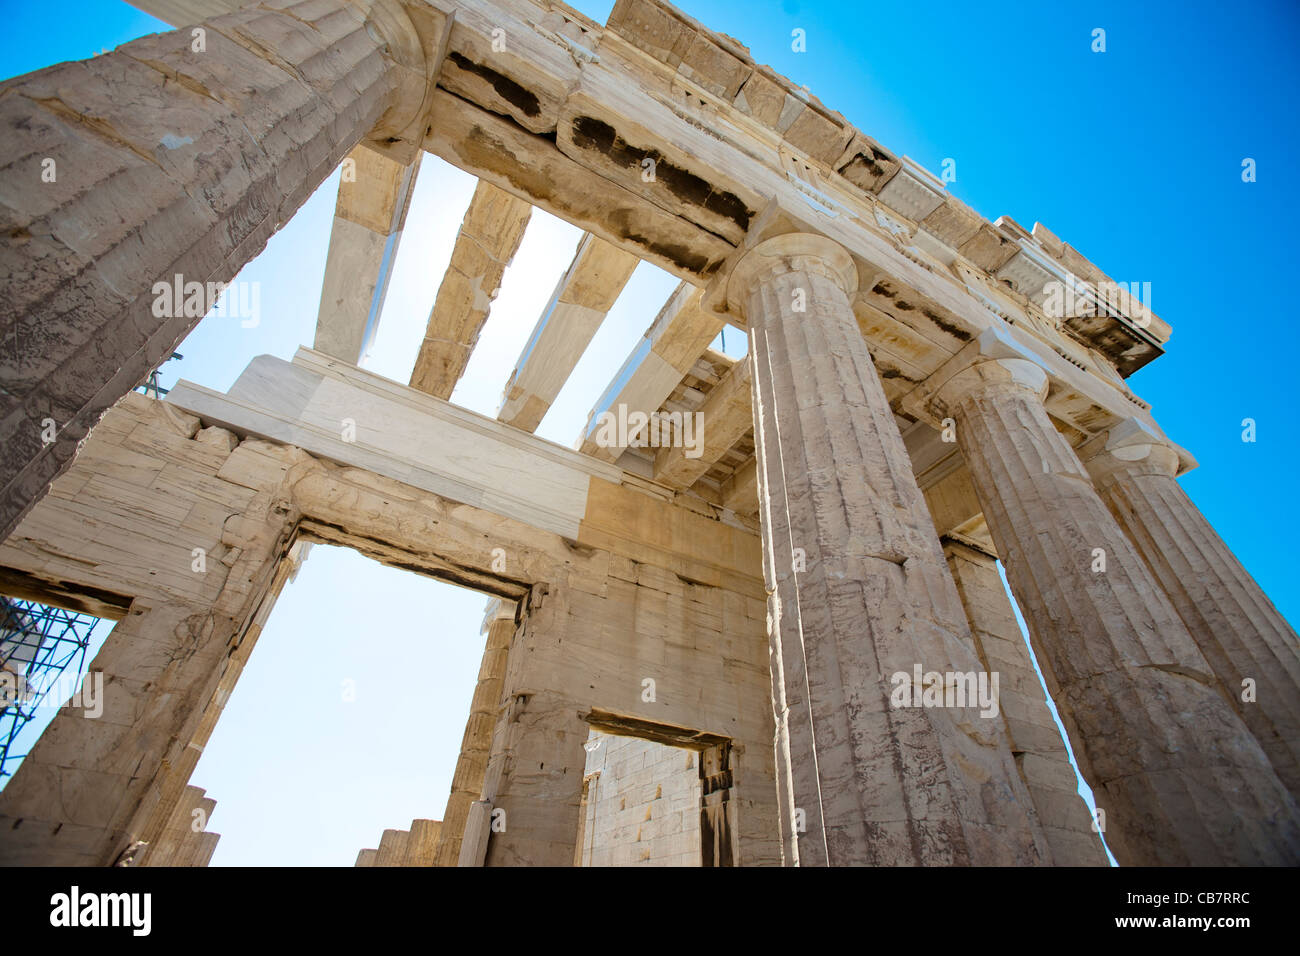 Reisebilder über Griechenland - Antike klassisches Griechenland-Architektur Stockfoto